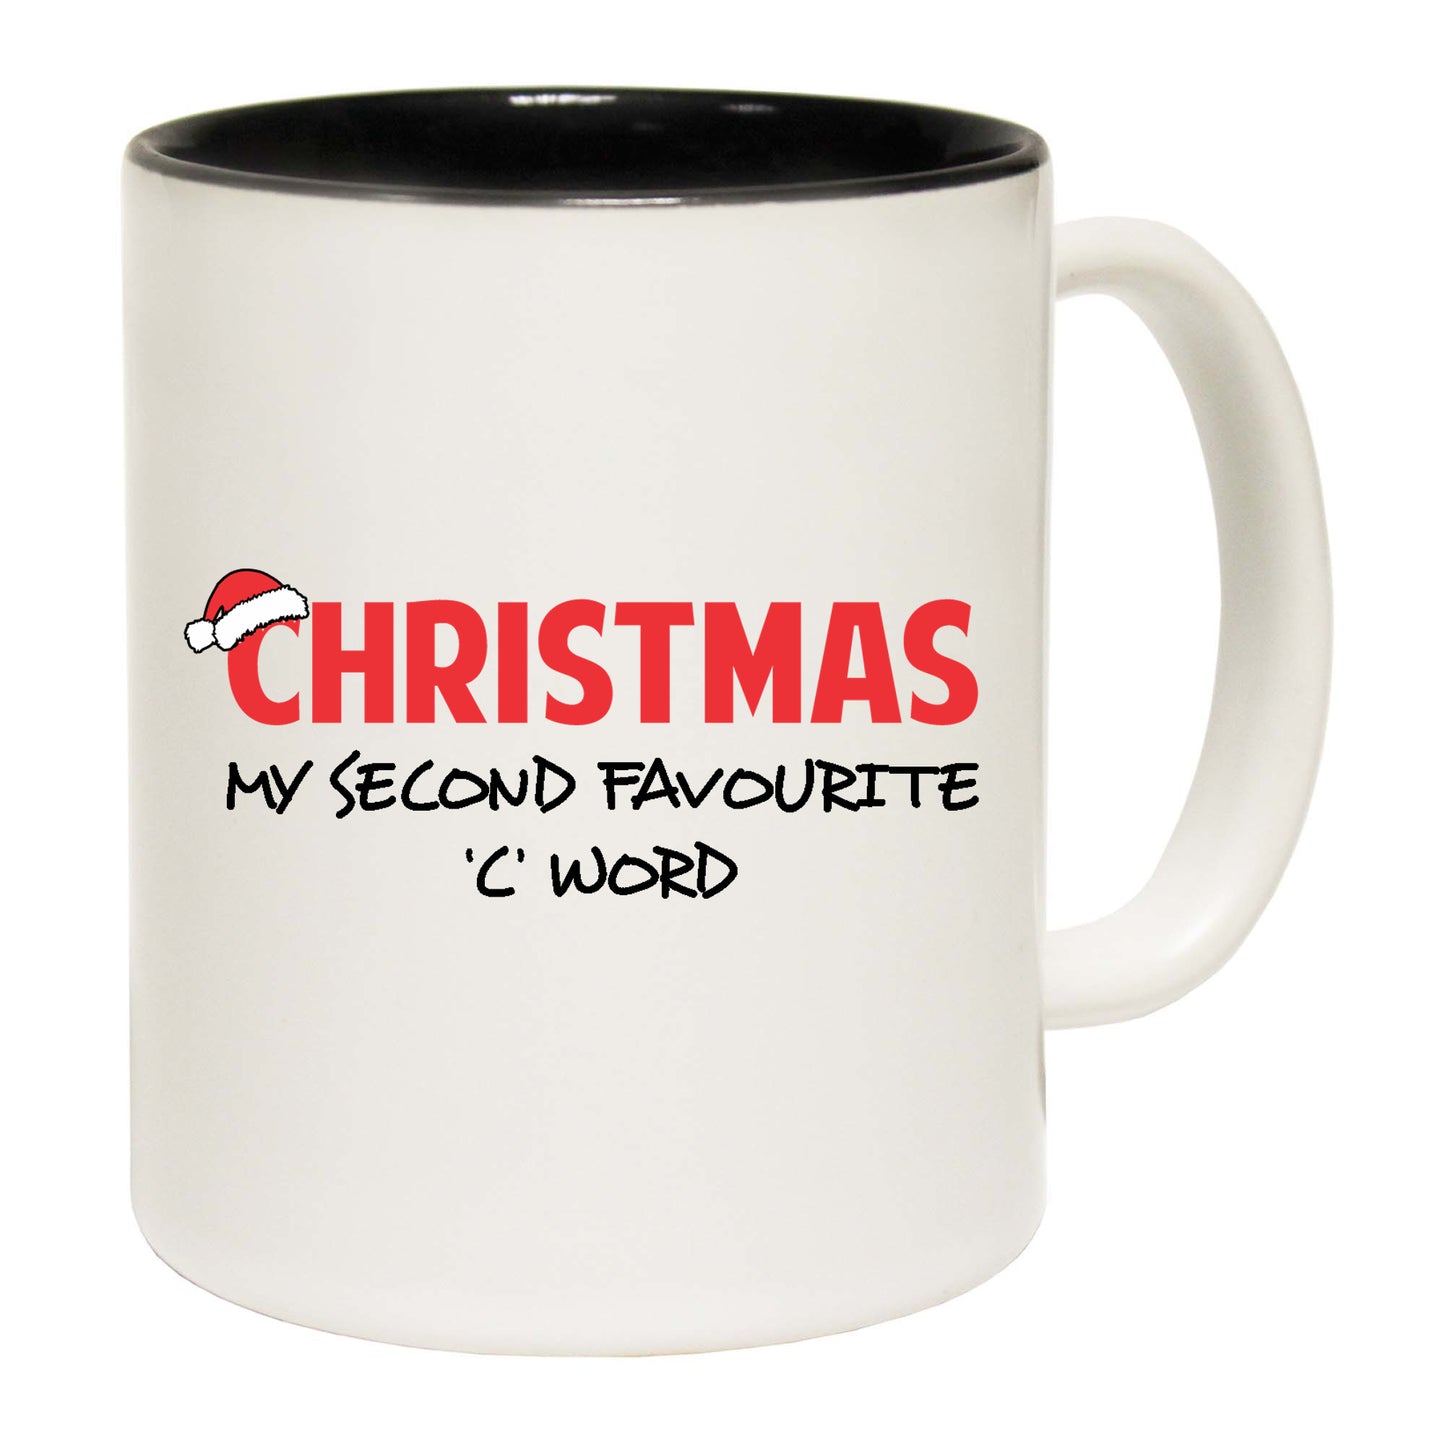 The Christmas Hub - Christmas My Second Favourite C Word - Funny Coffee Mug